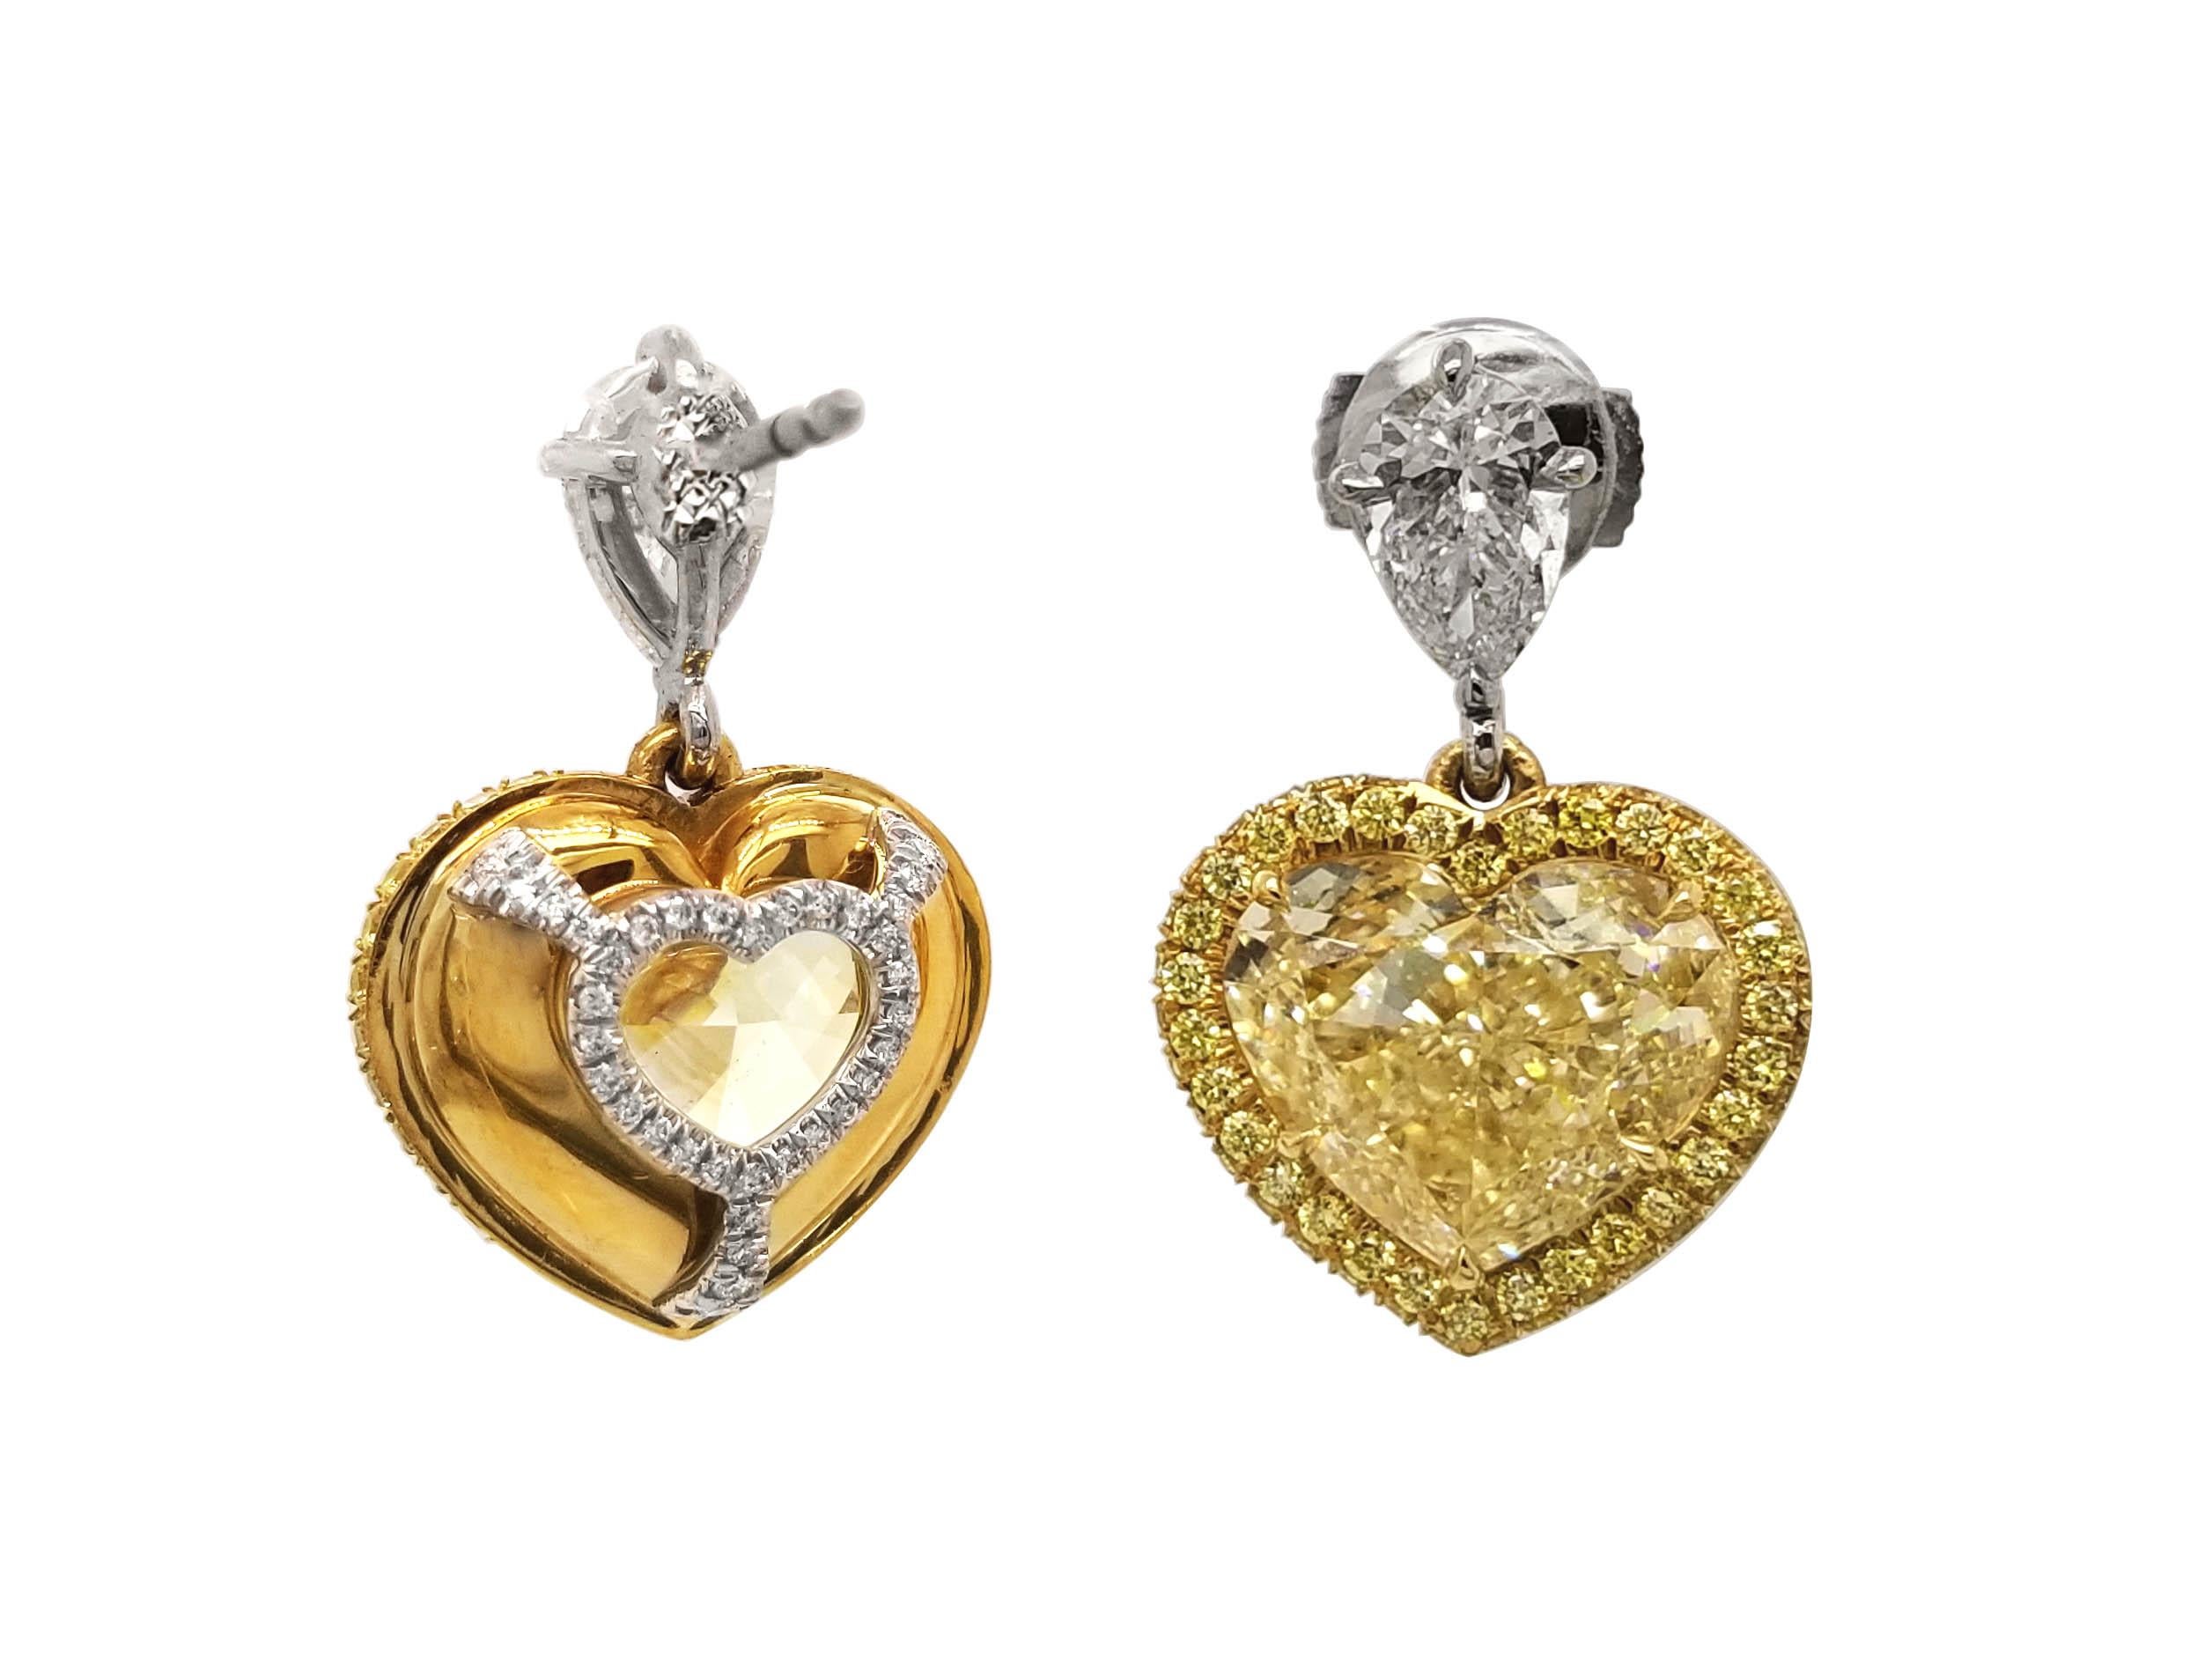 Heart Cut Scarselli Dangle Heart Earrings with 6 Carat Fancy Light Yellow Diamonds